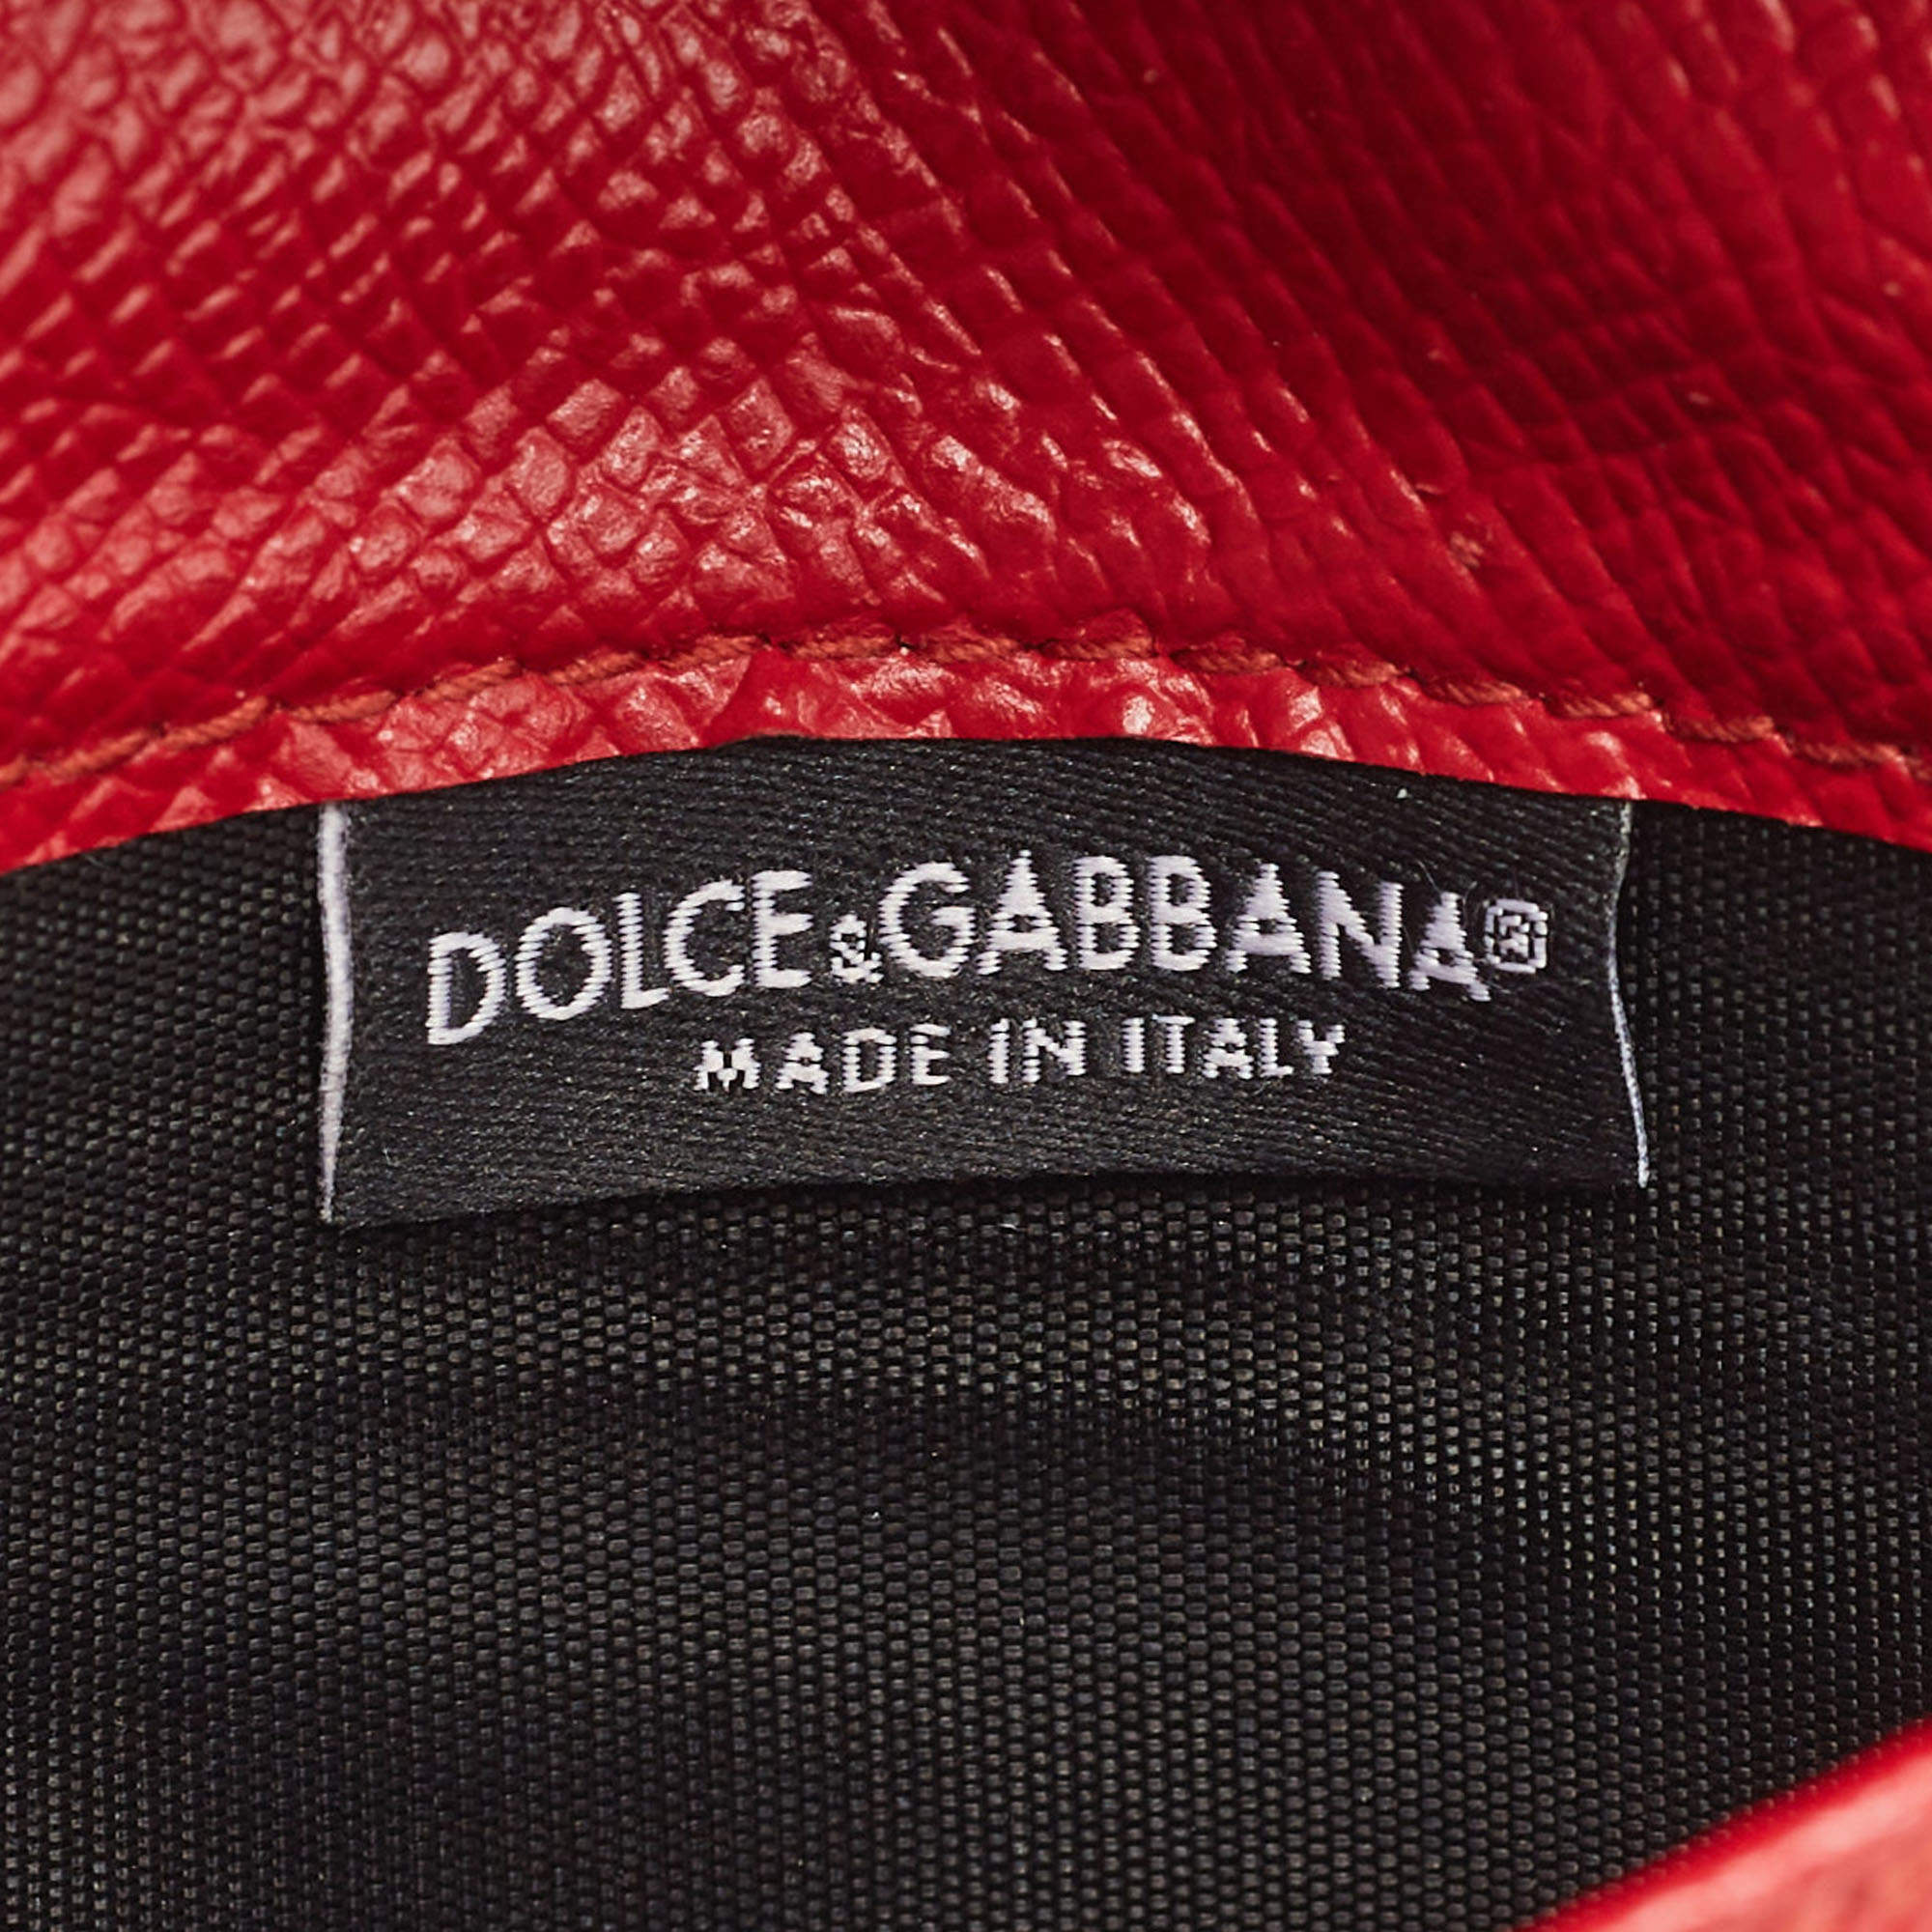 Dolce & Gabbana Brick Red Dauphine Leather Sicily Von Wallet on